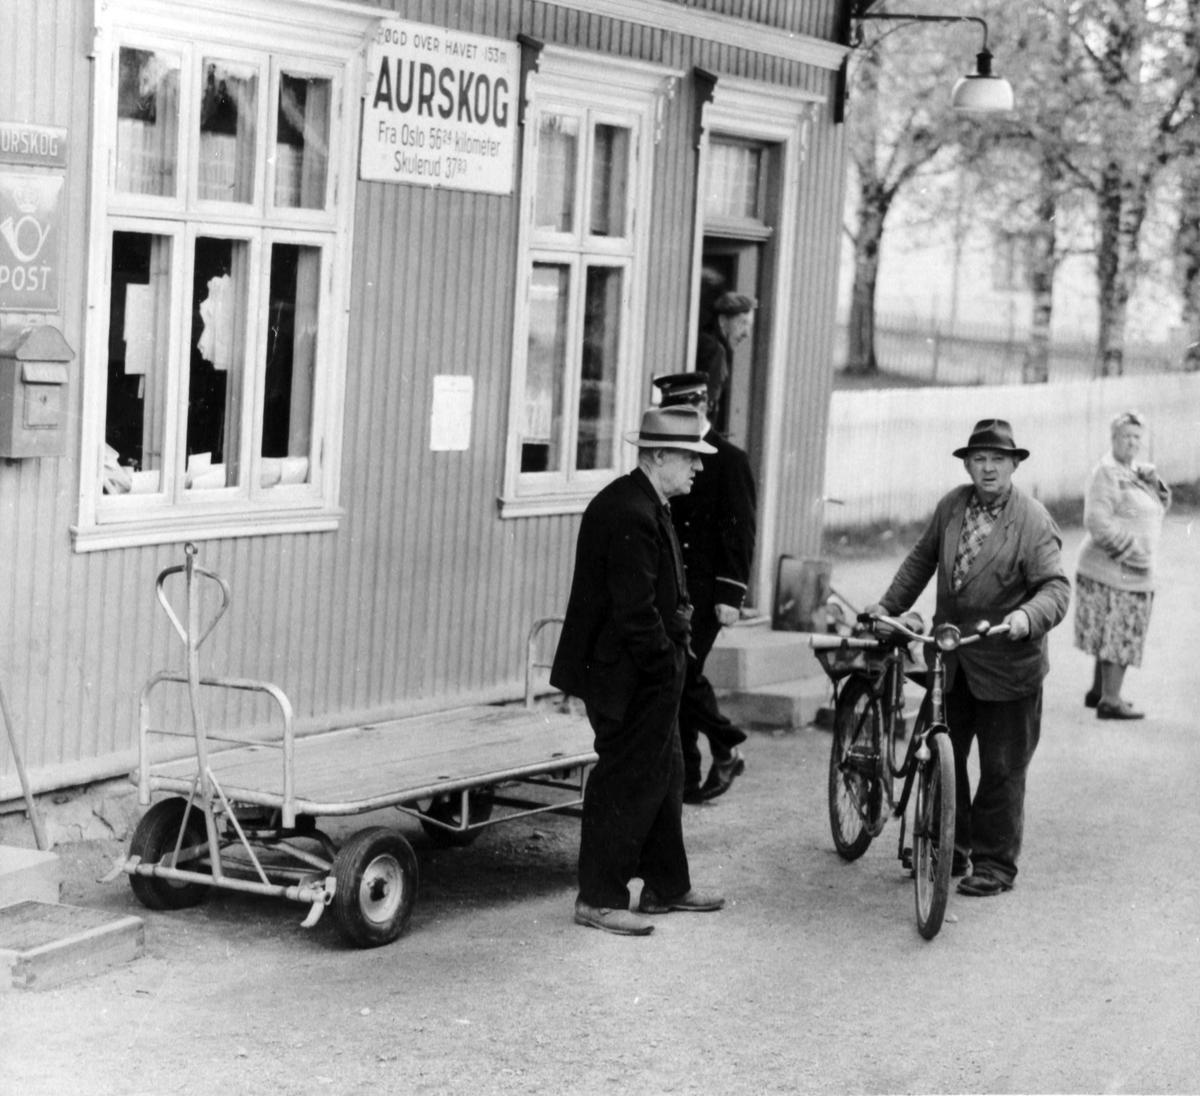 Bydefolk møter opp på Aurskog stasjon ved togankomst.
Mannen med sykkelen på bildet er Sigurd Teigen.